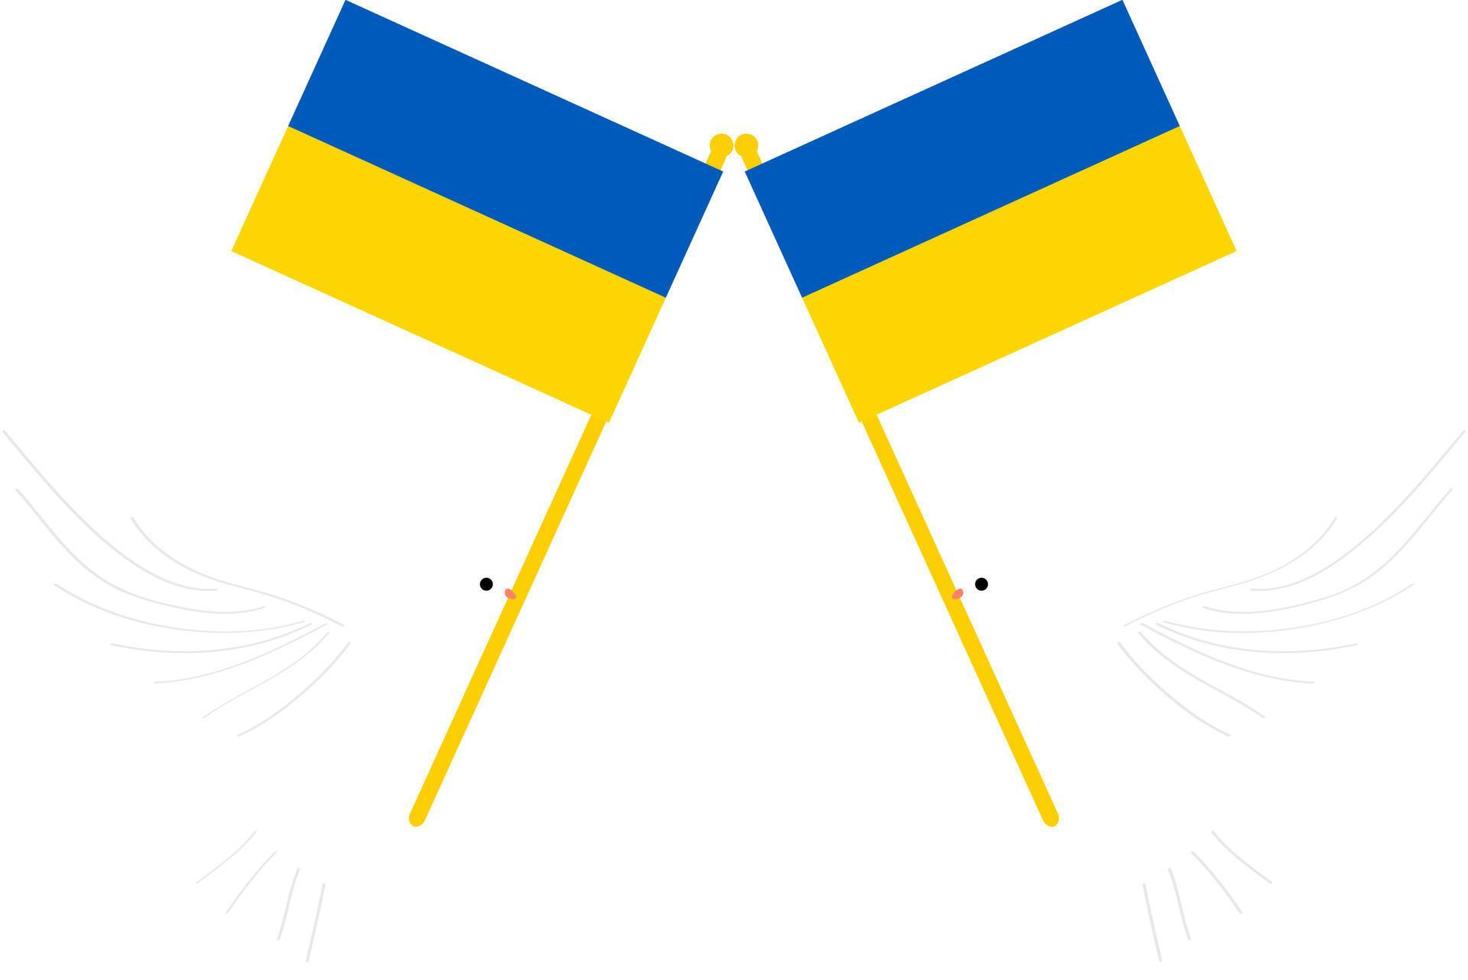 hryvnia ukrainienne vecteur drapeau dessiné à la main, drapeau ukrainien vecteur drapeau dessiné à la main